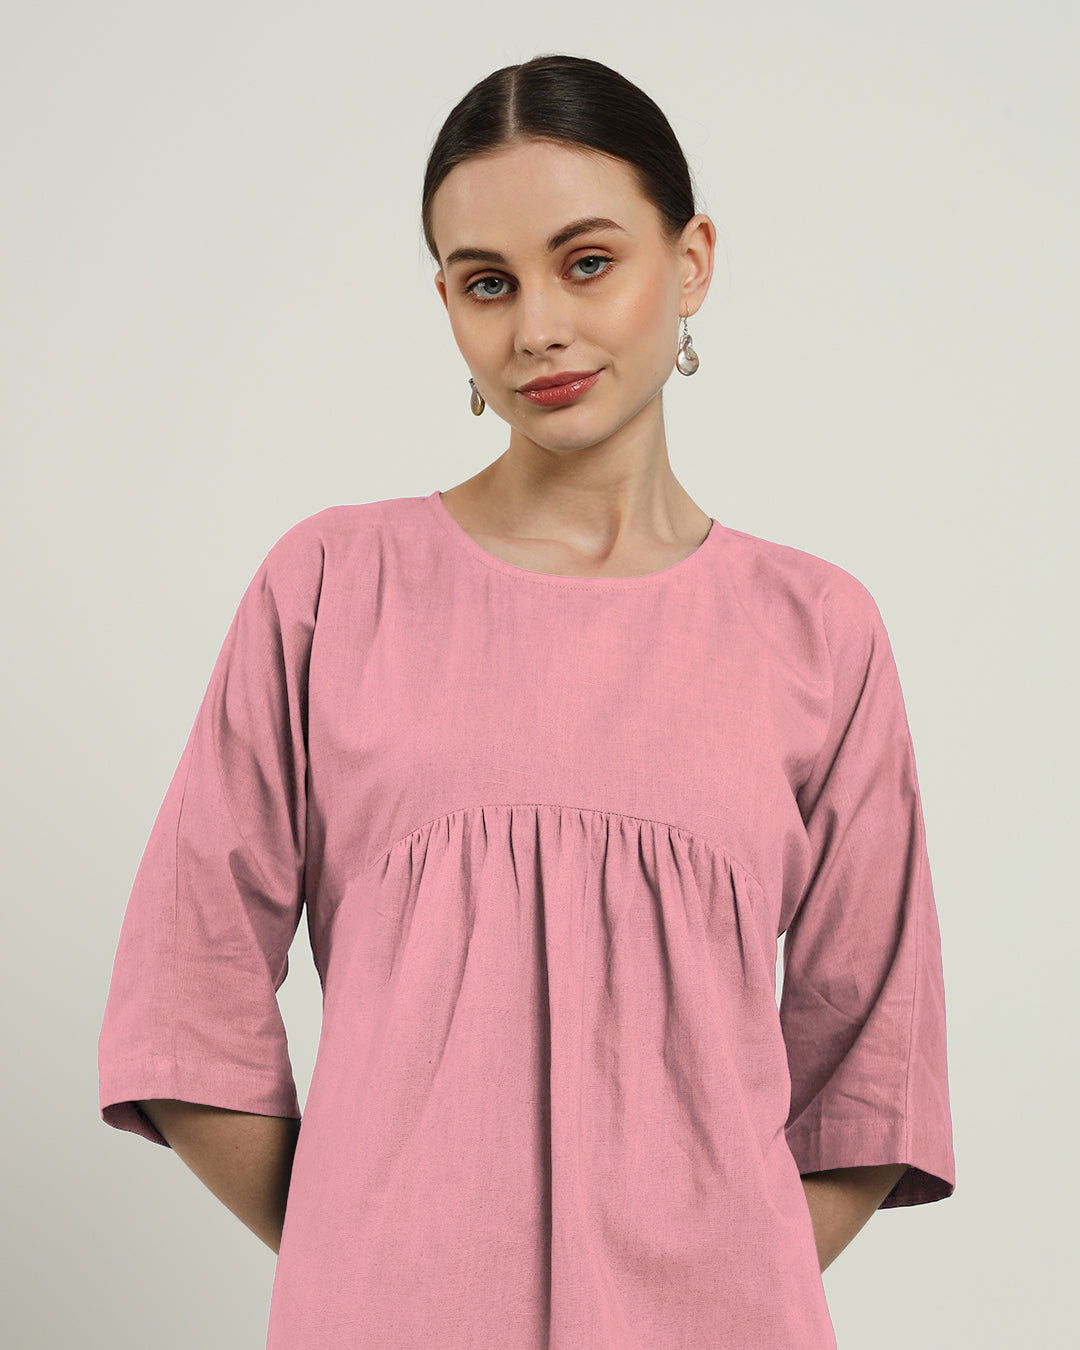 The Monrovia Fondant Pink Cotton Dress